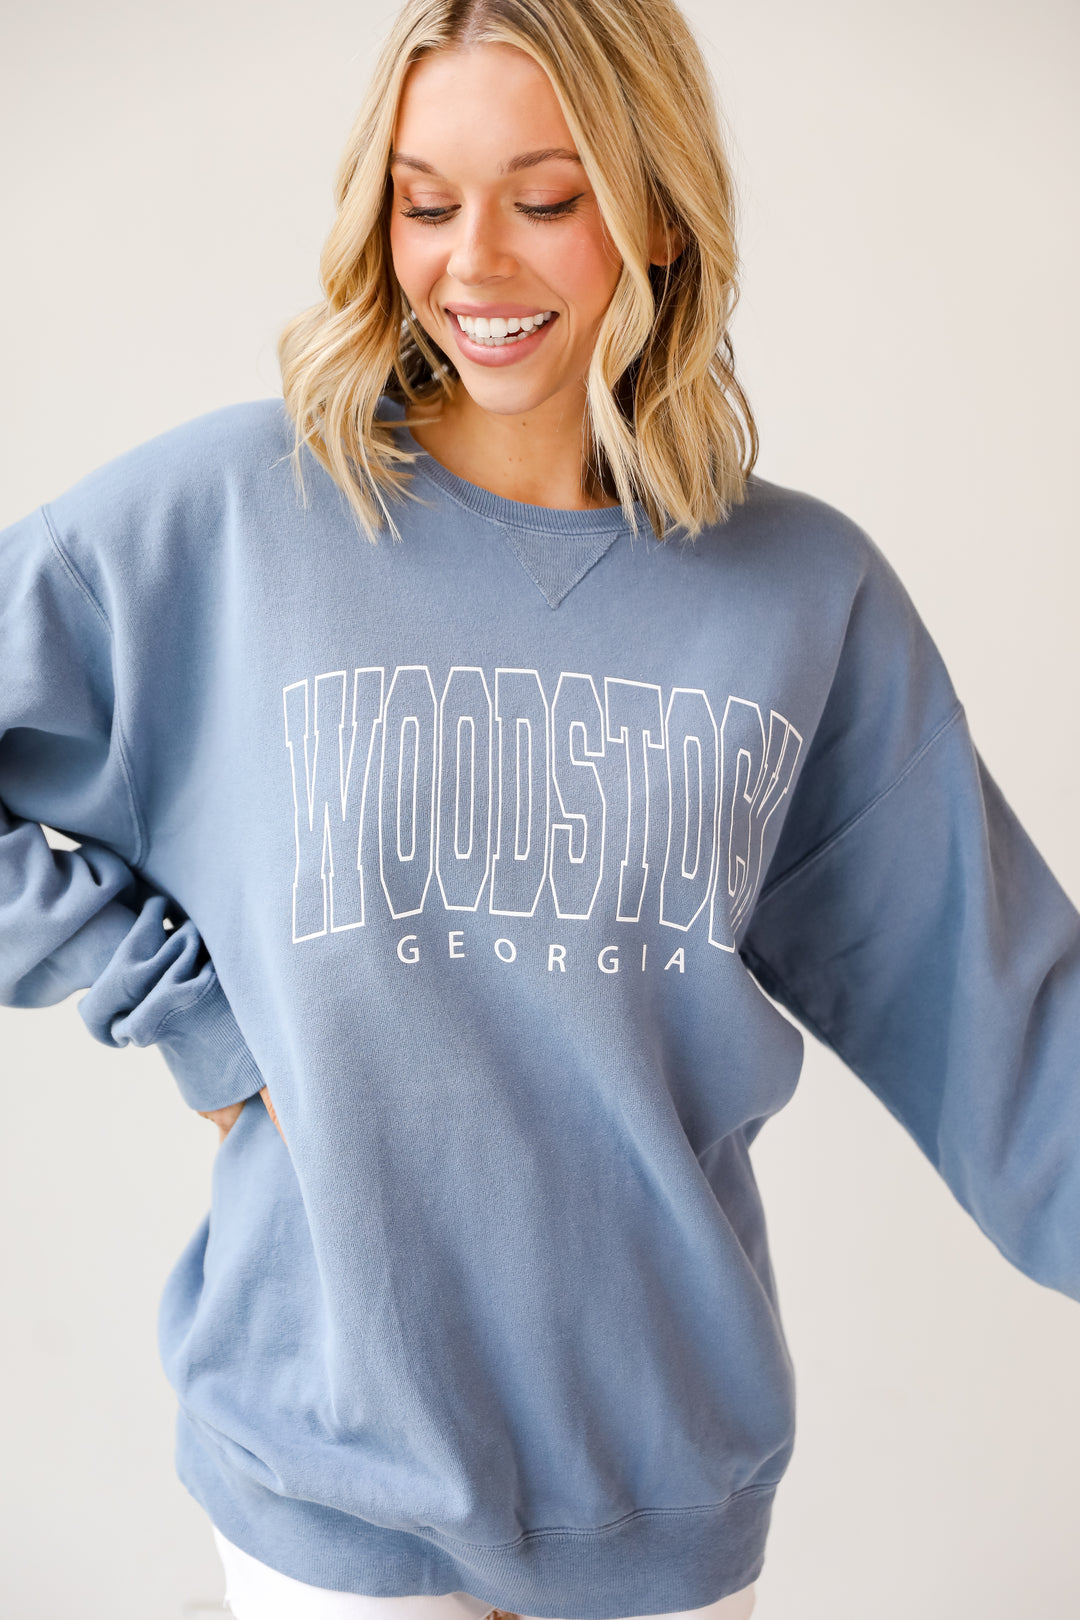 Blue Woodstock Georgia Sweatshirt. Graphic Sweatshirt. Comfy Oversized Sweatshirt. 